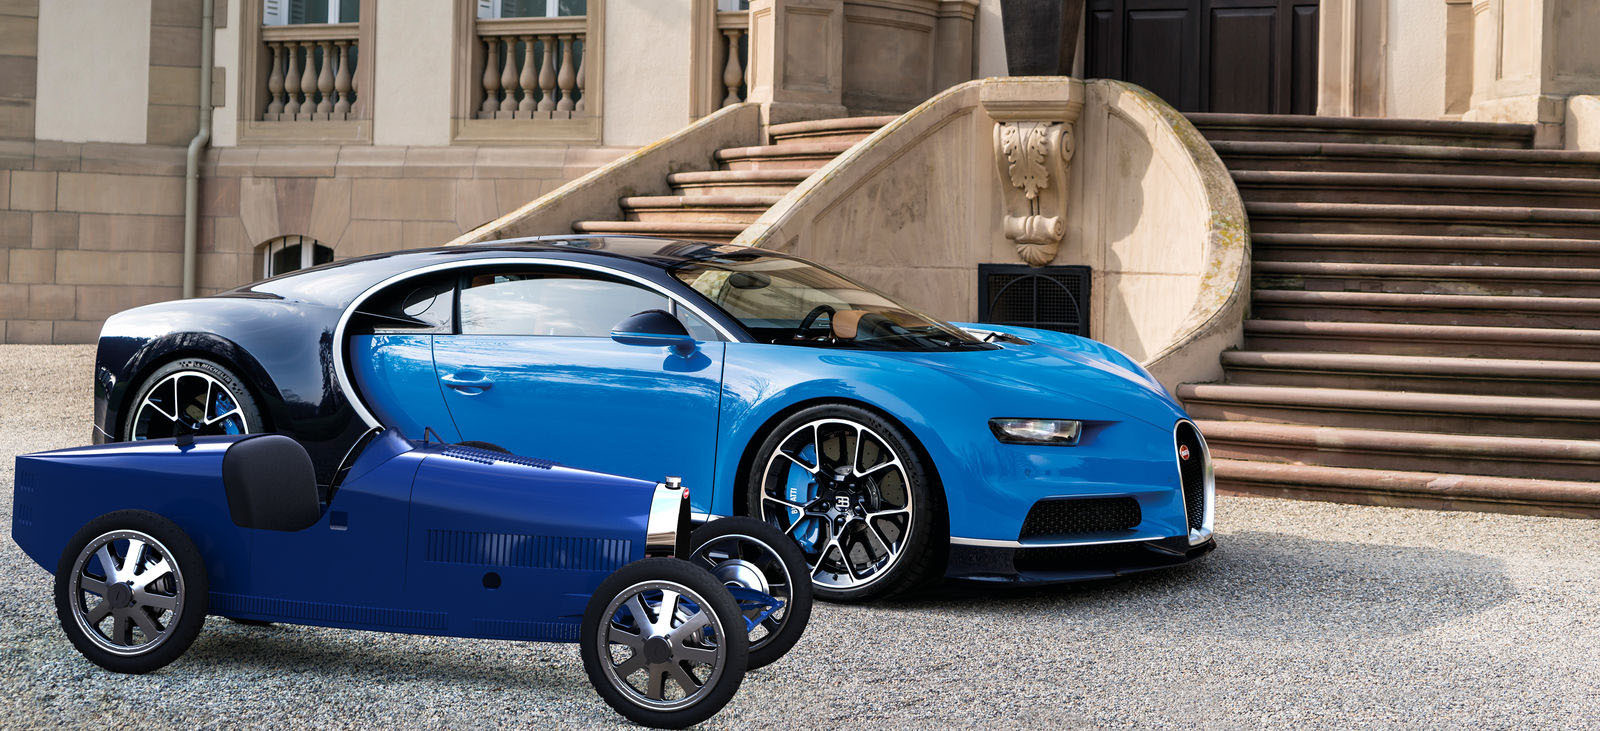 Και εσύ μπορείς να αγοράσεις αυτήν τη Bugatti!